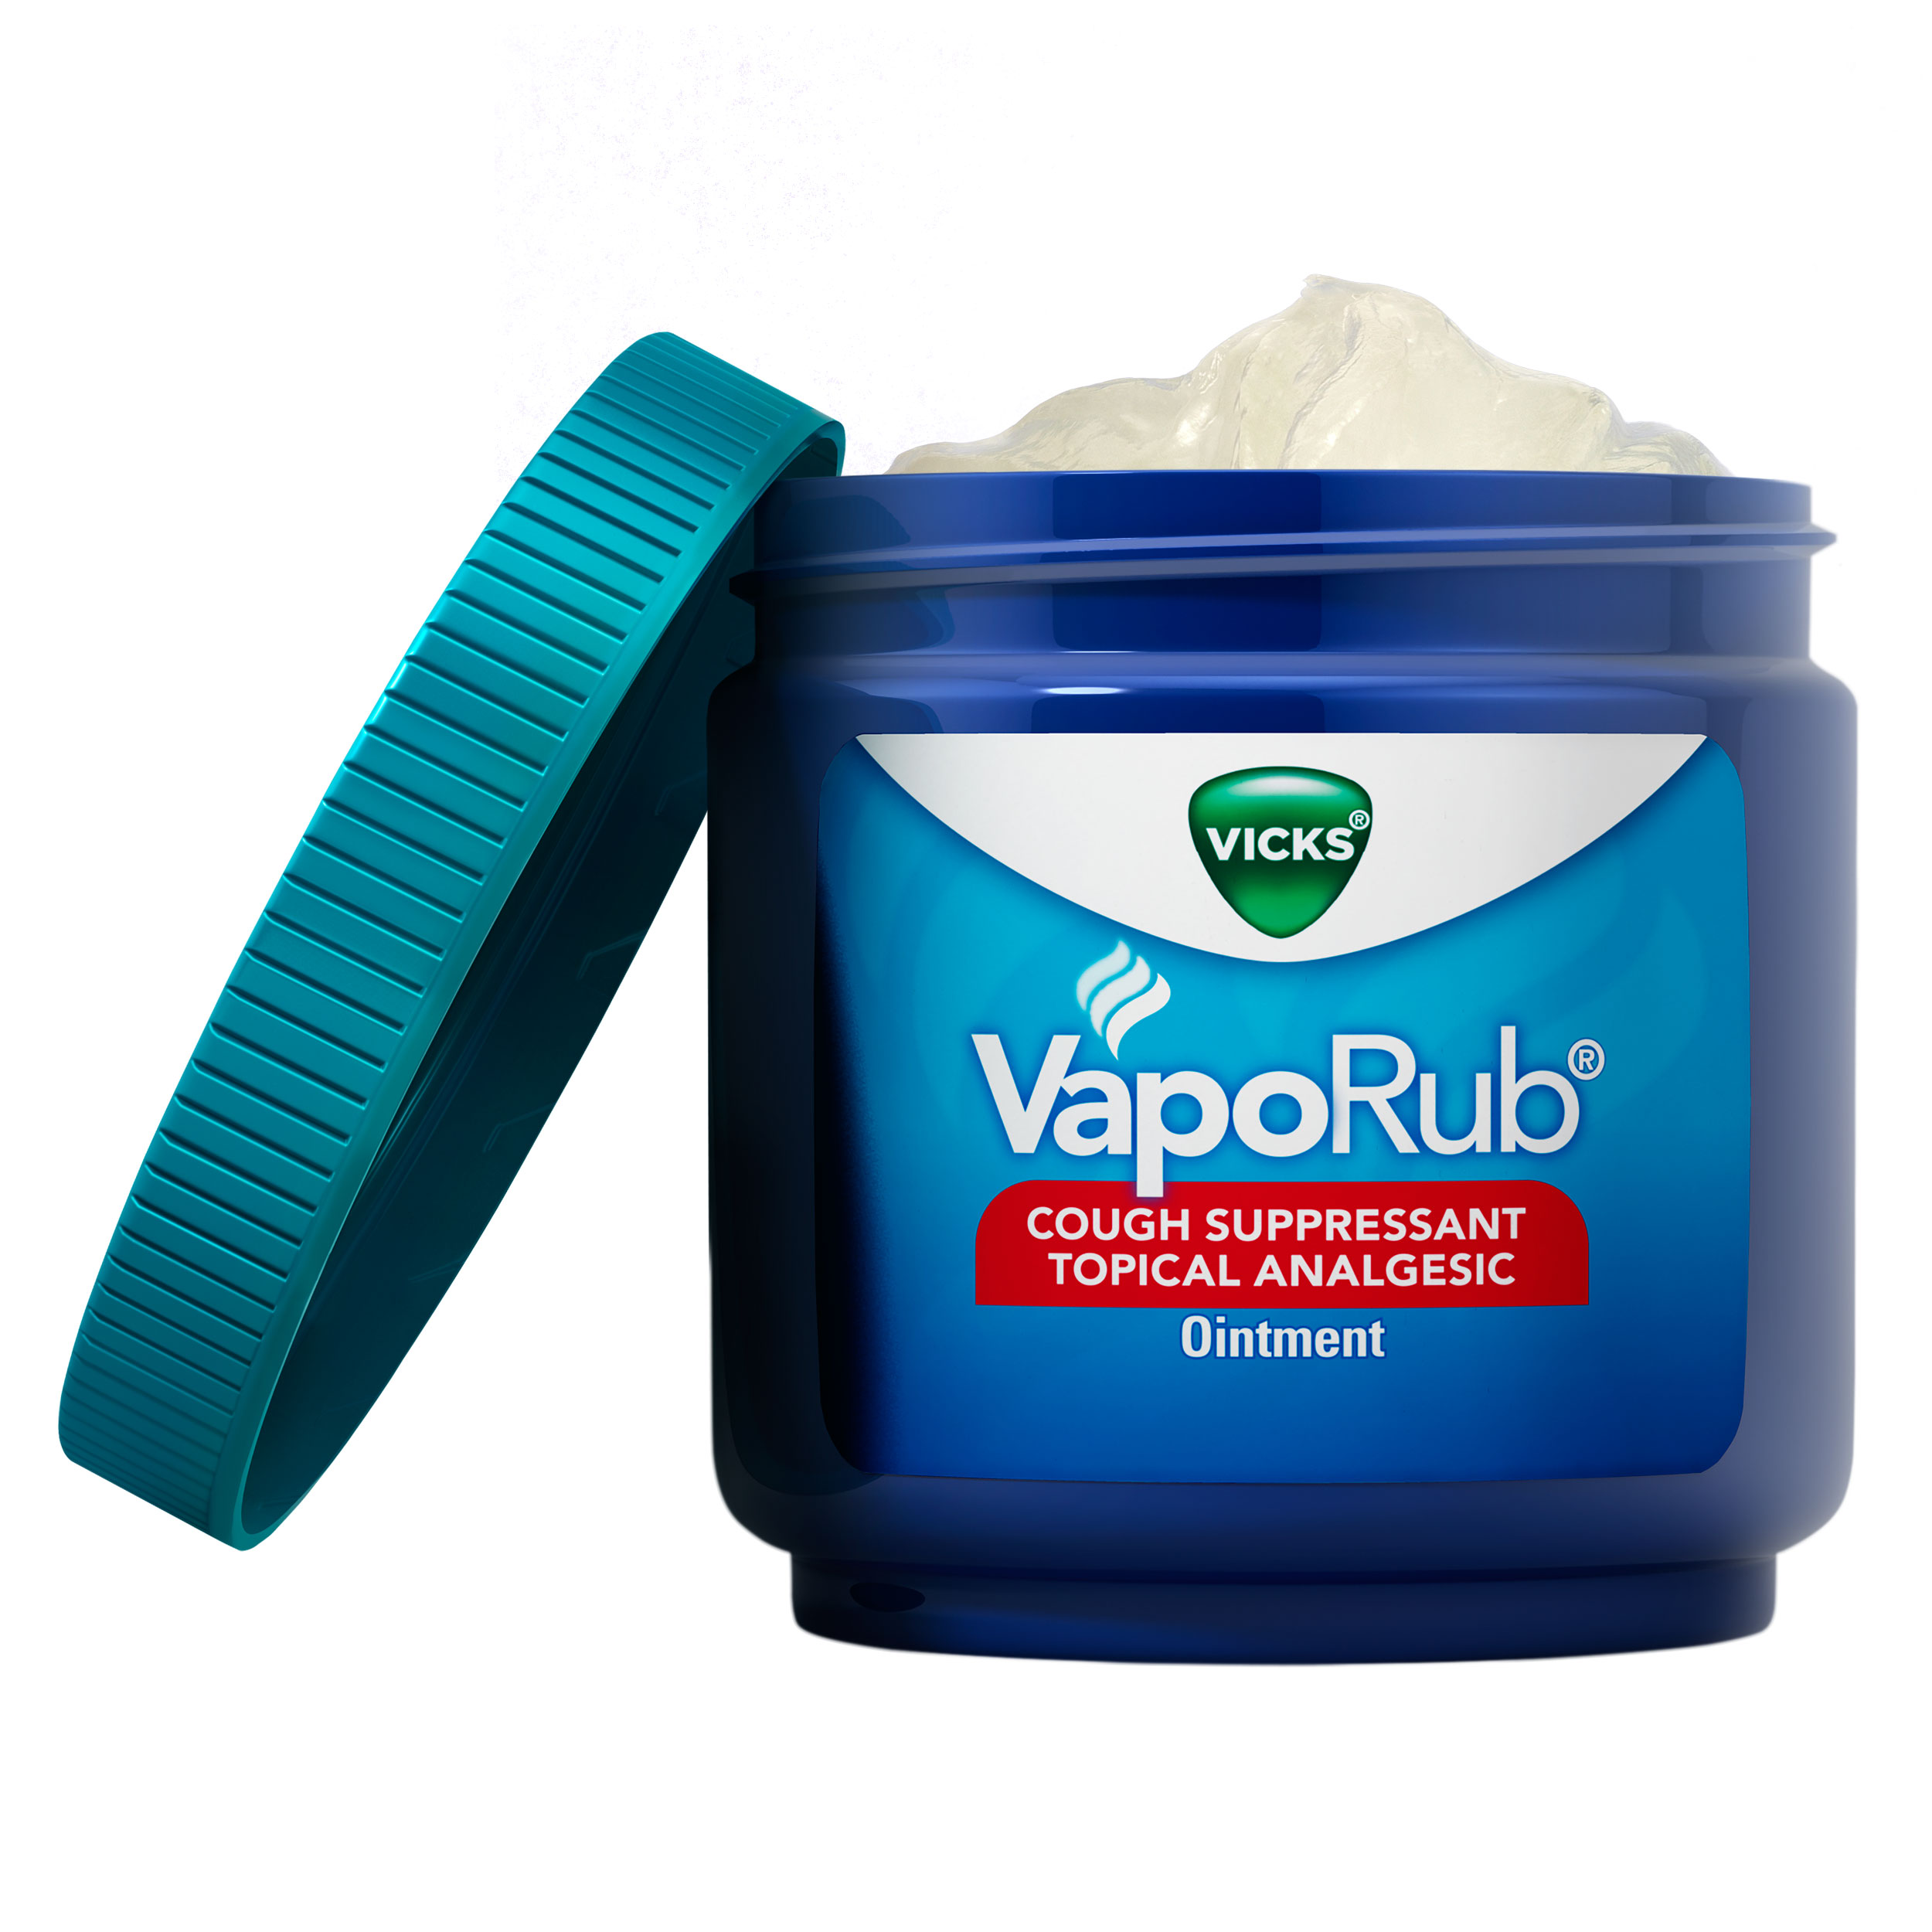  Vicks VapoRub, ungüento para frotar el pecho, alivio de la tos,  resfriado, dolores y dolores con vapores medicados originales, supresor  tópico de la tos, 1.76 onzas (paquete de 3) : Todo